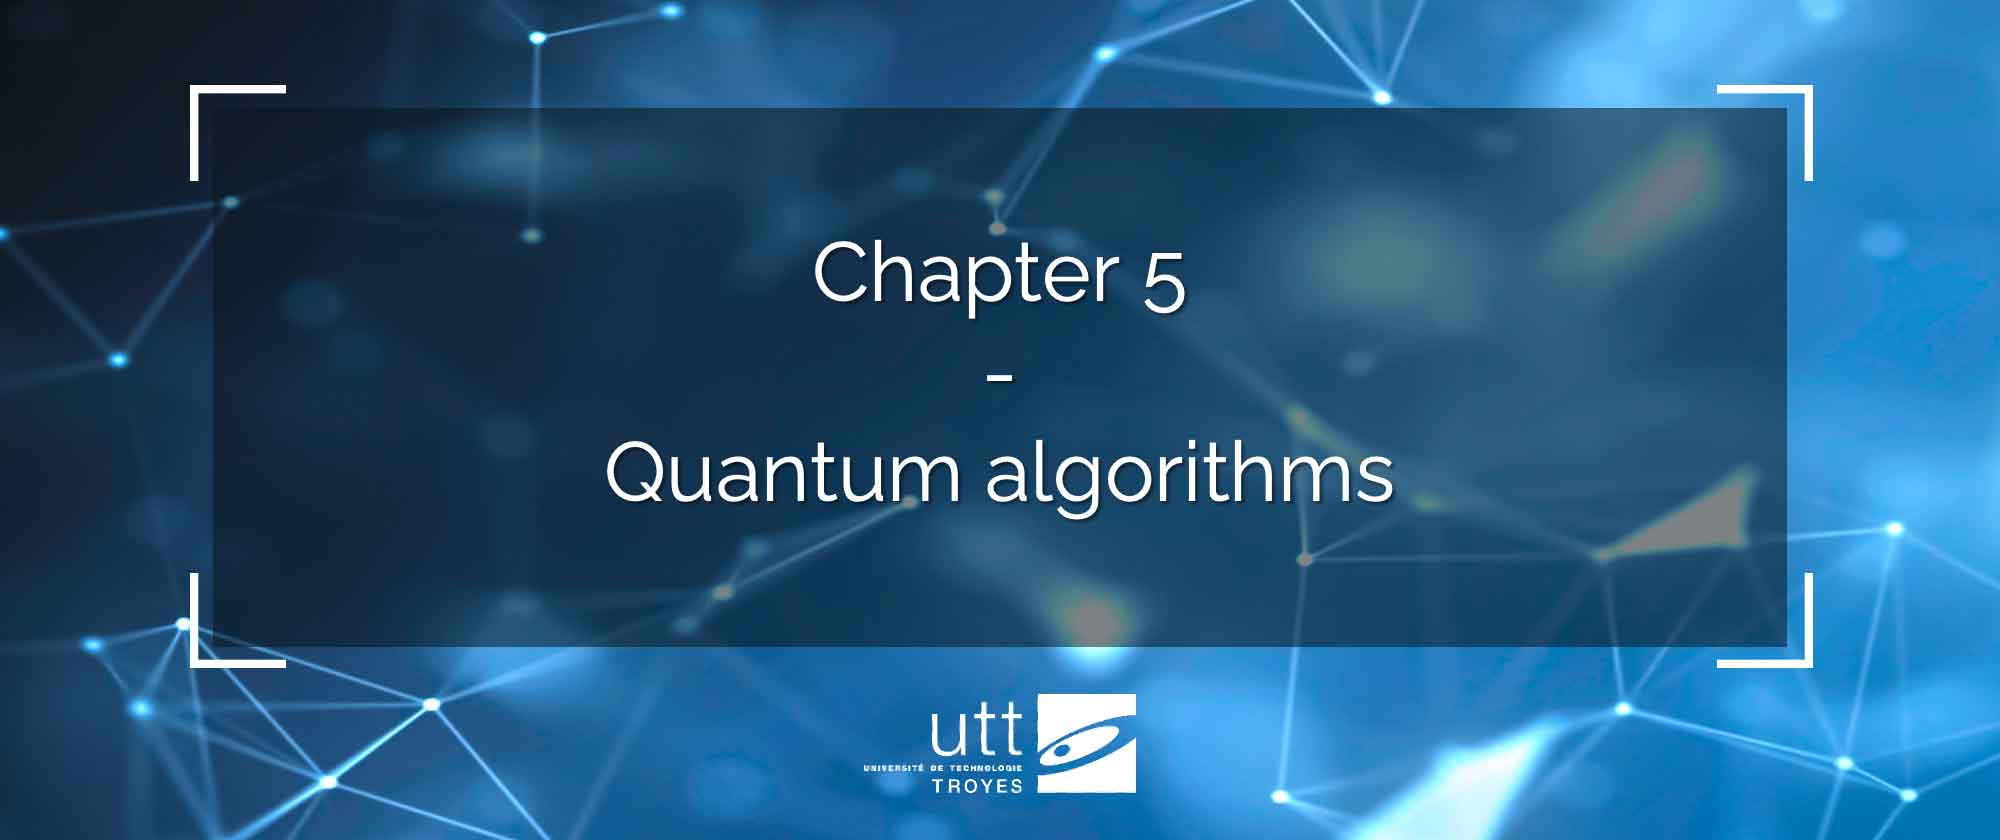 Chapter 5 - Quantum algorithms